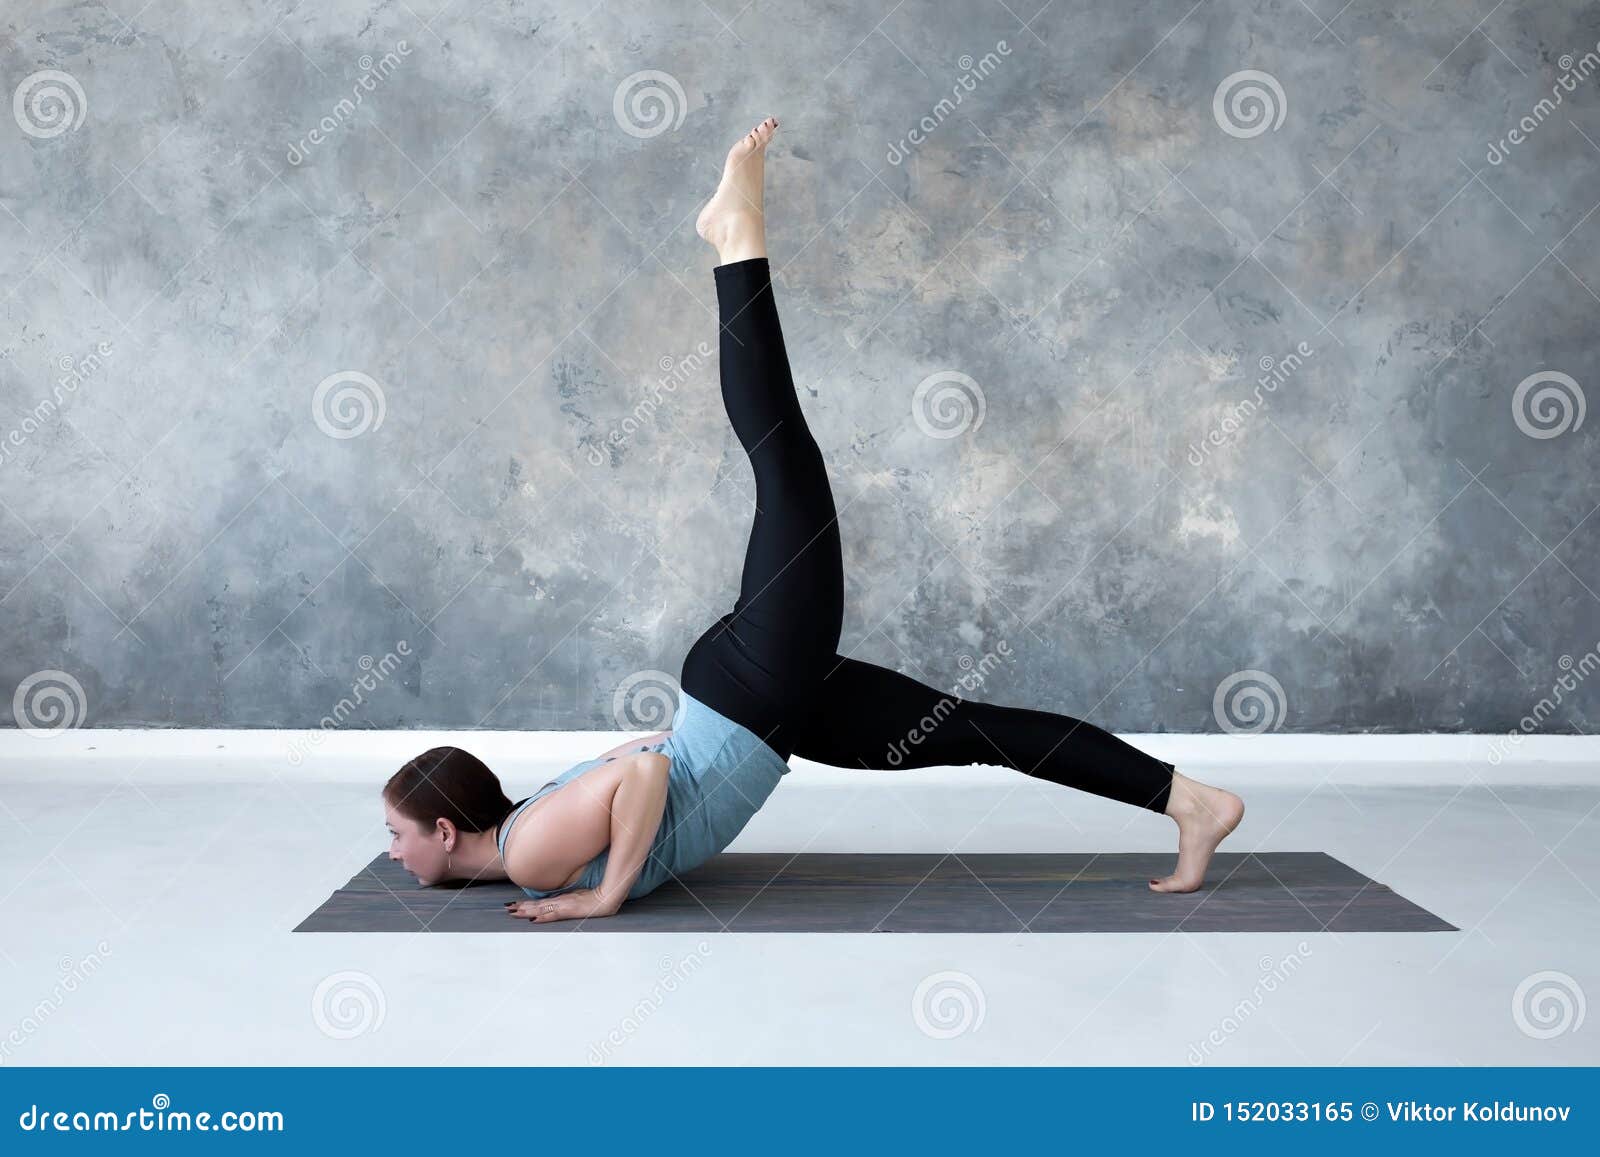 83. Yoga Advanced – Complex locust pose – Queen Yoga